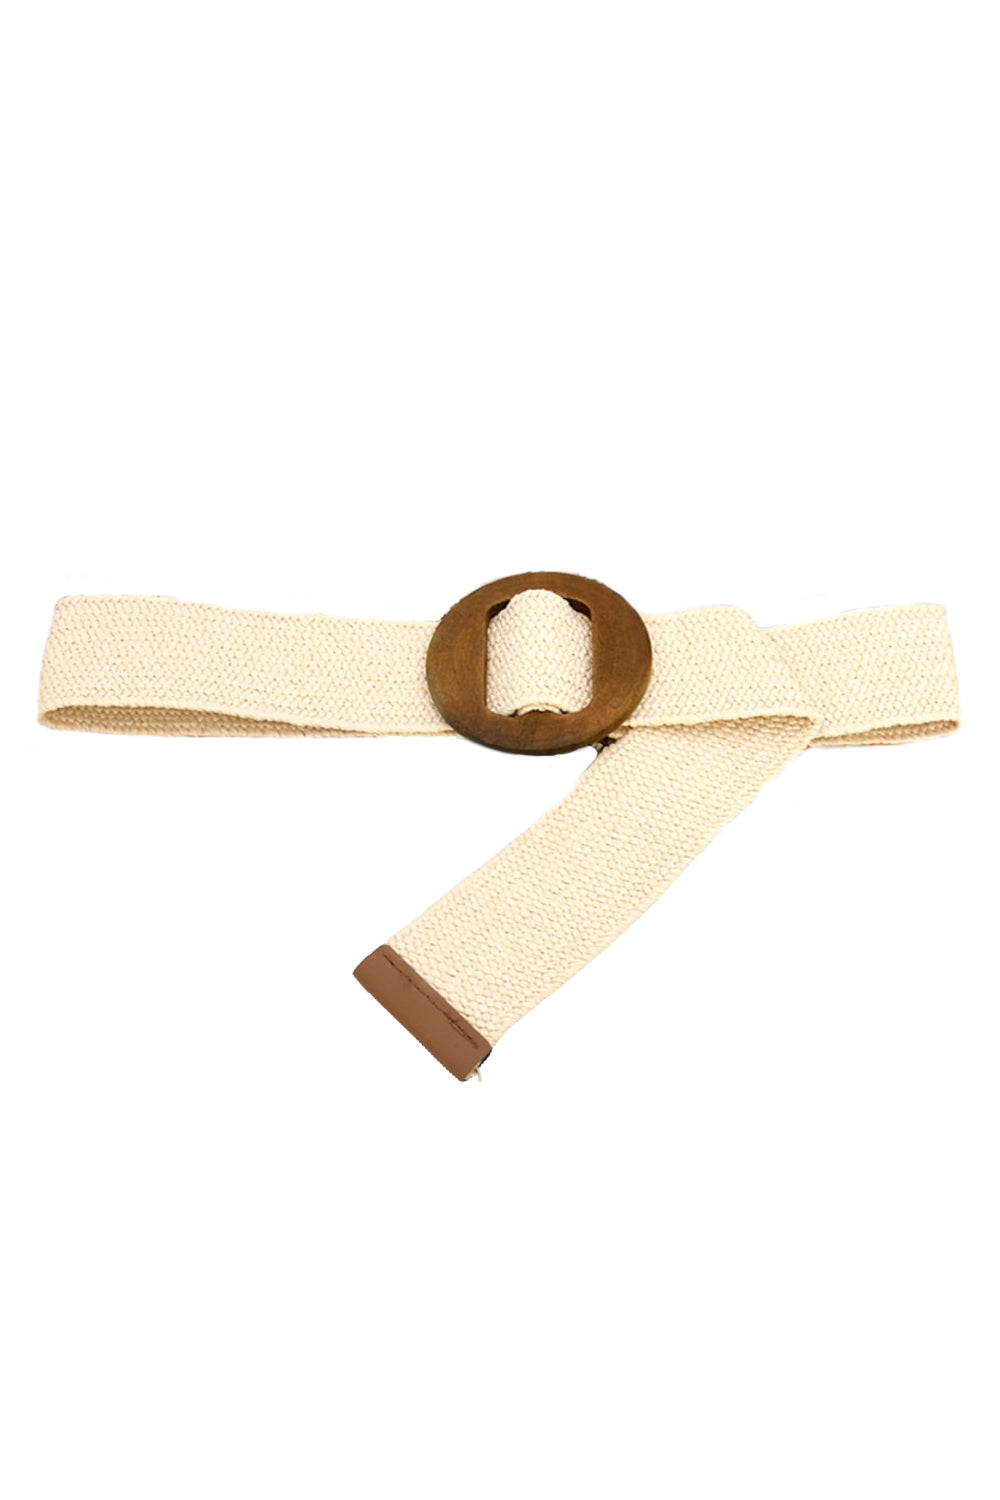 Maisie Stretch Belt - Cream